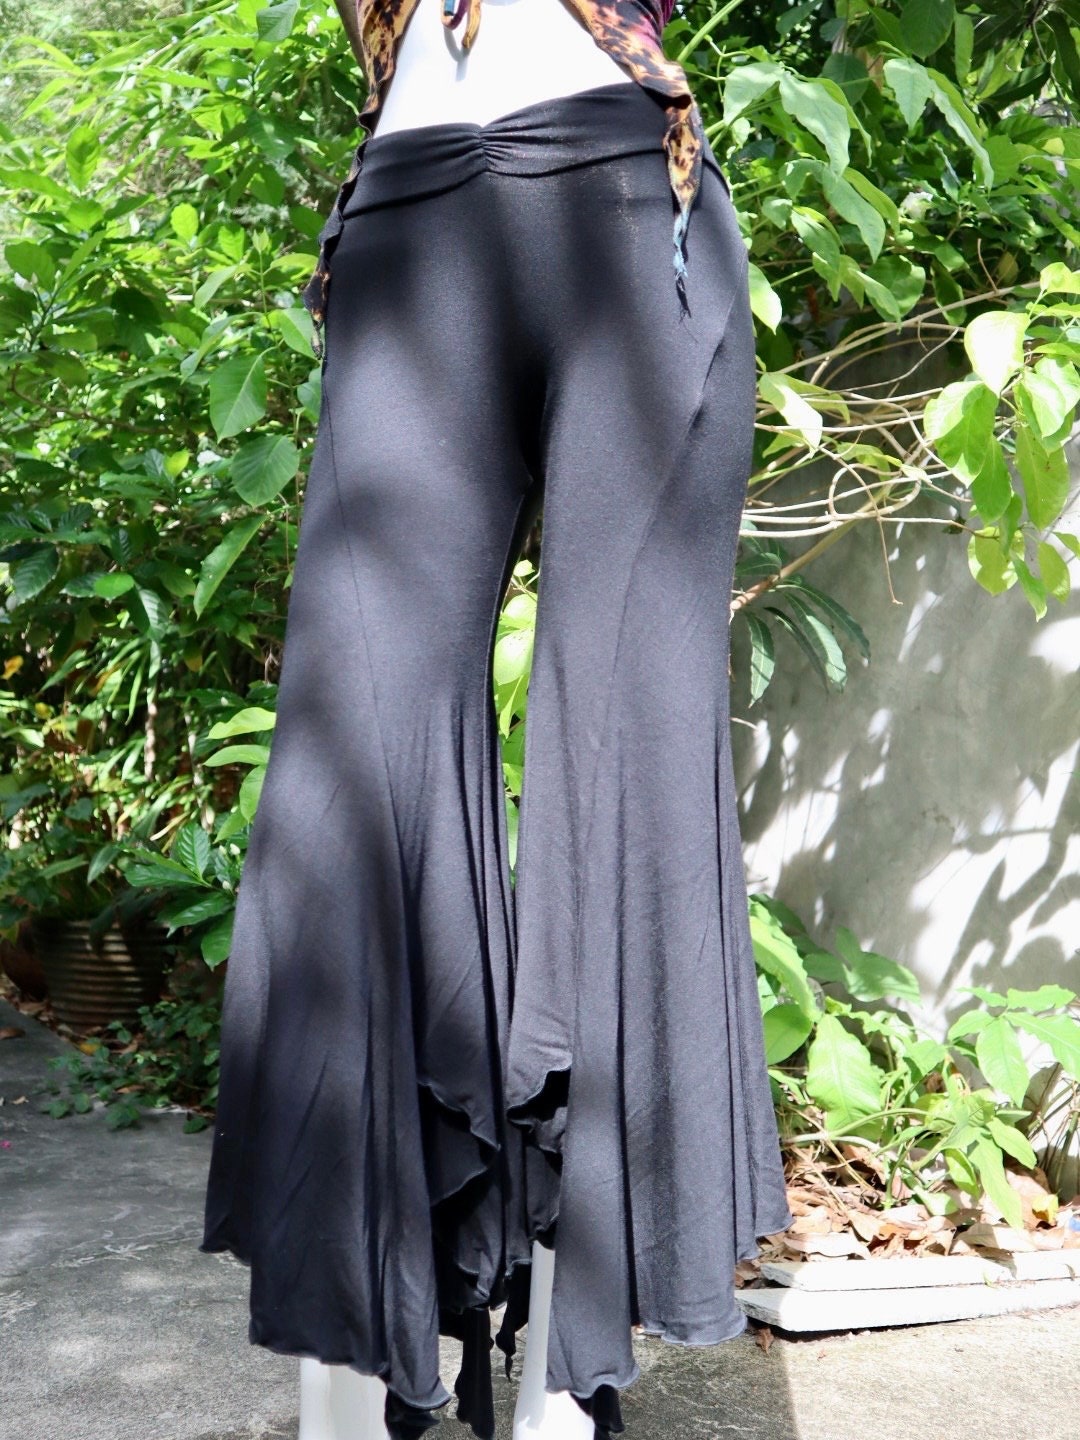 Gaiam Women's Wide Leg Crop Yoga Pants - Flowy Culotte Style